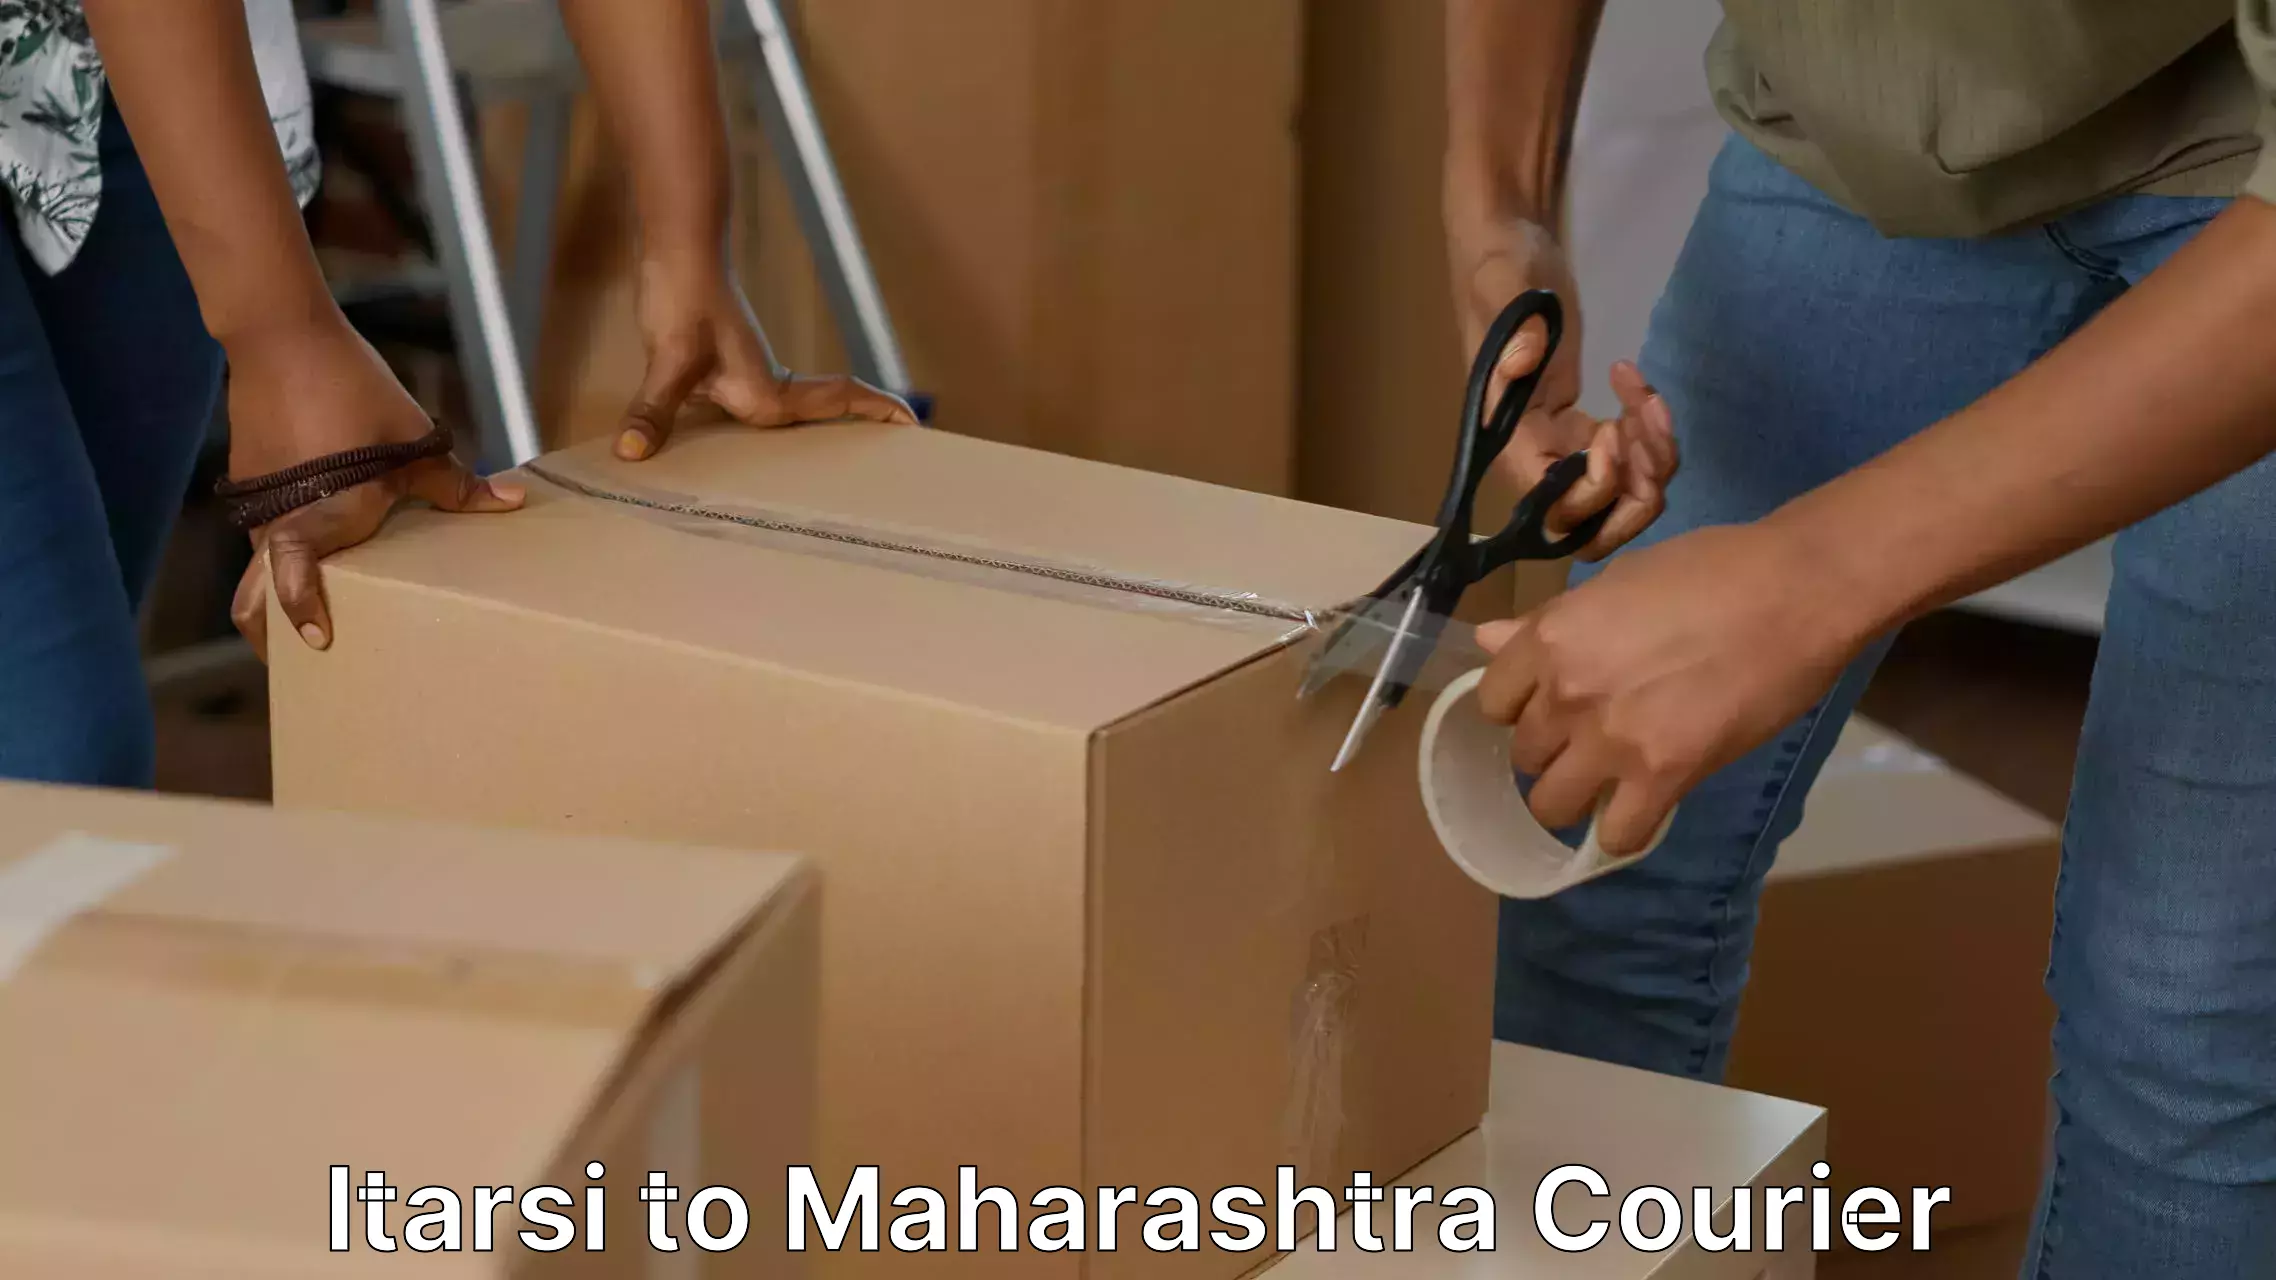 Skilled movers Itarsi to Maharashtra